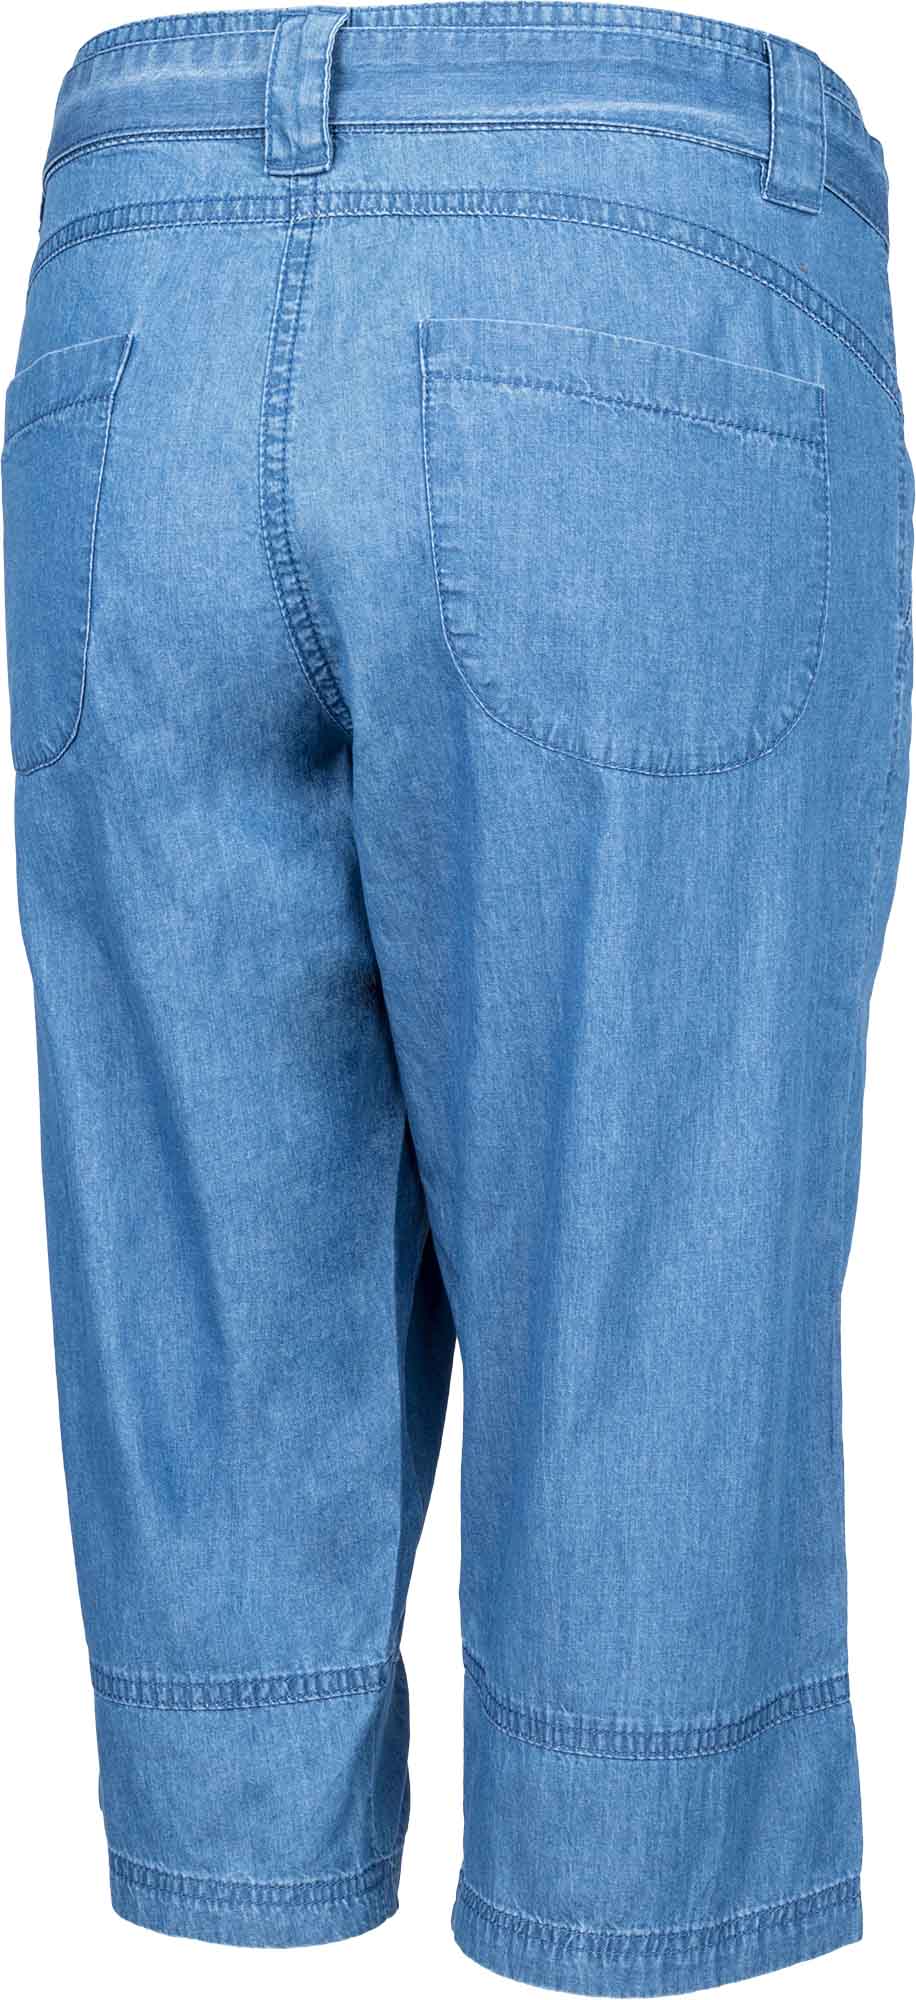 Women’s 3/4 length canvas pants